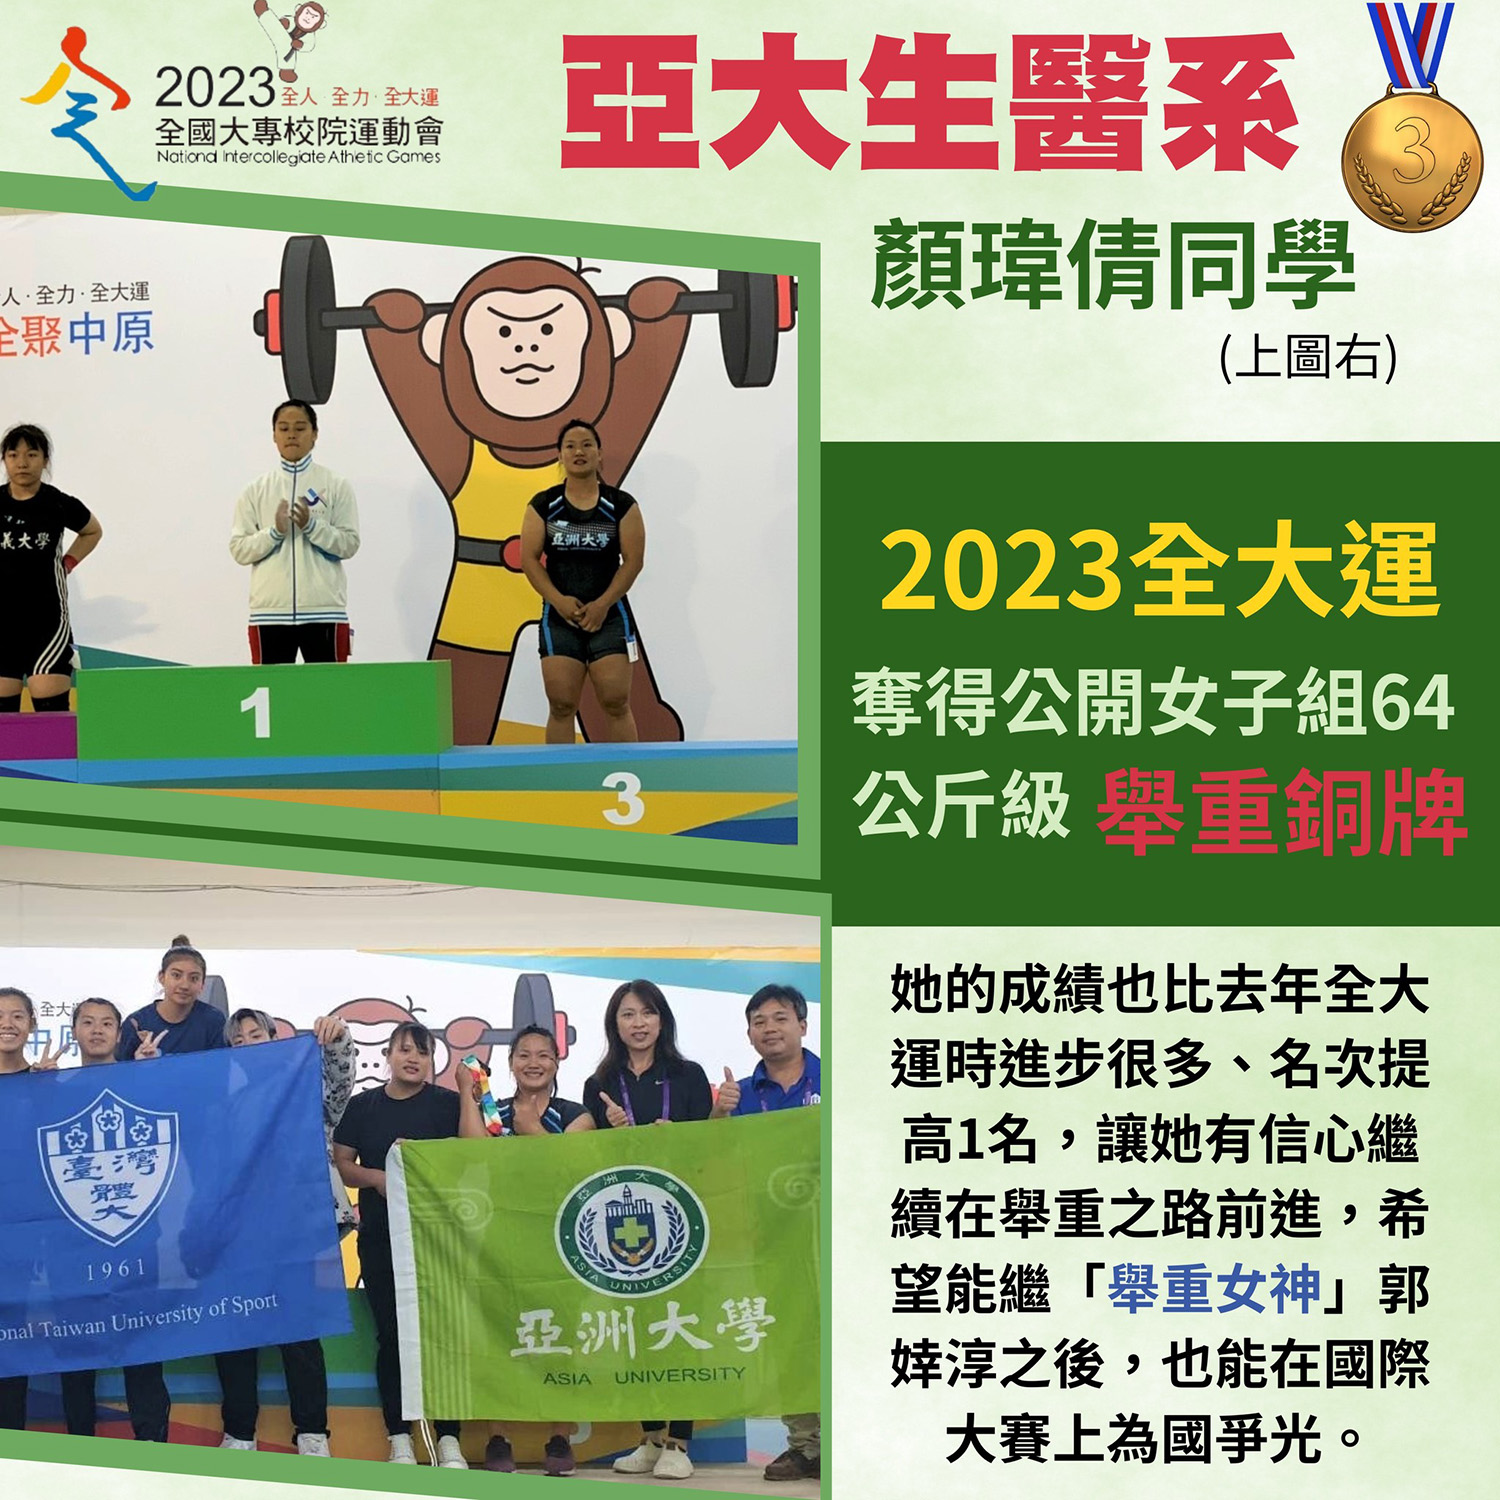 亚大生医系颜玮倩同学 2023全大运夺得公开女子组64公斤级举重铜牌